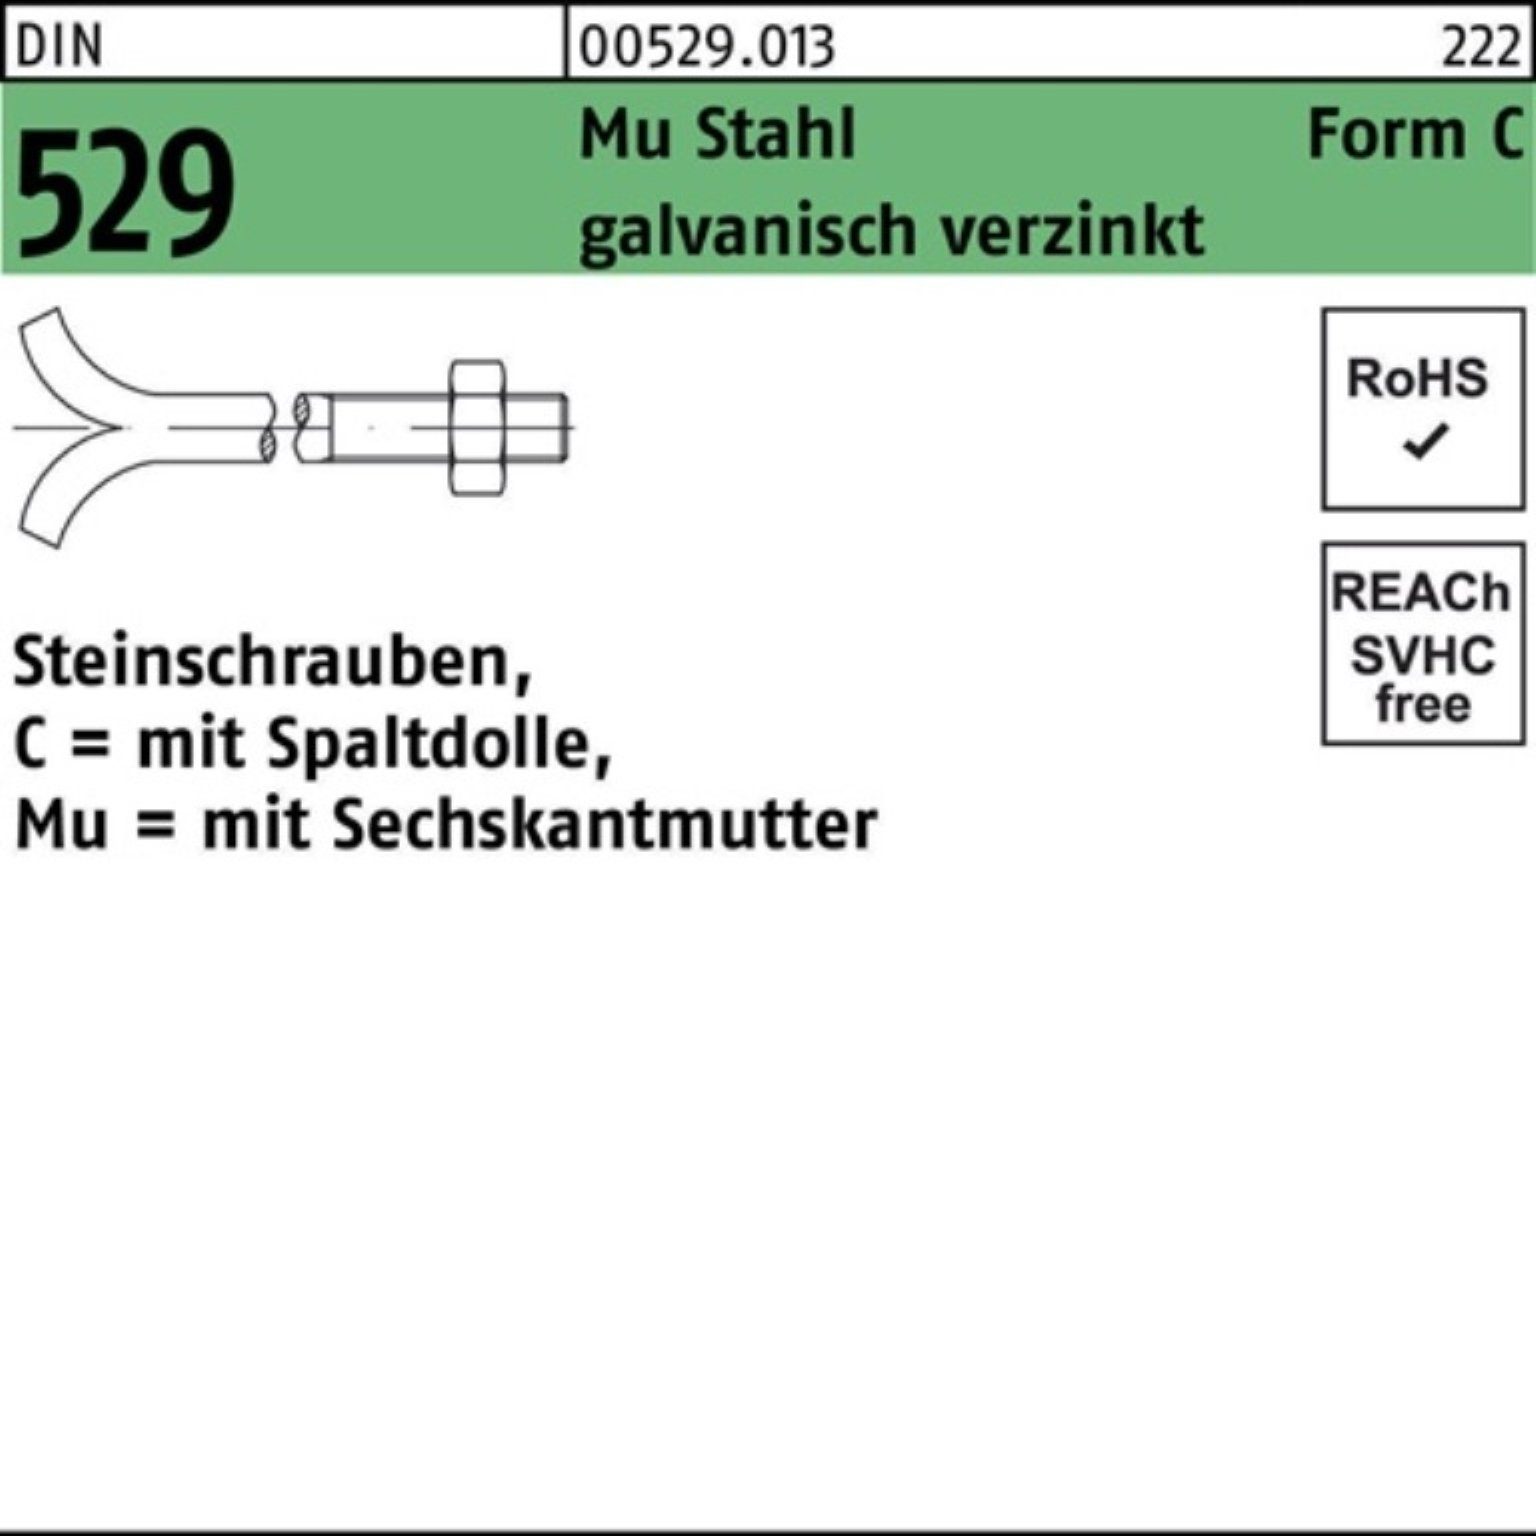 24x500 Steinschraube CM Spaltdolle/6-ktmutter Schraube 529 100er Reyher DIN Pack 3. Mu